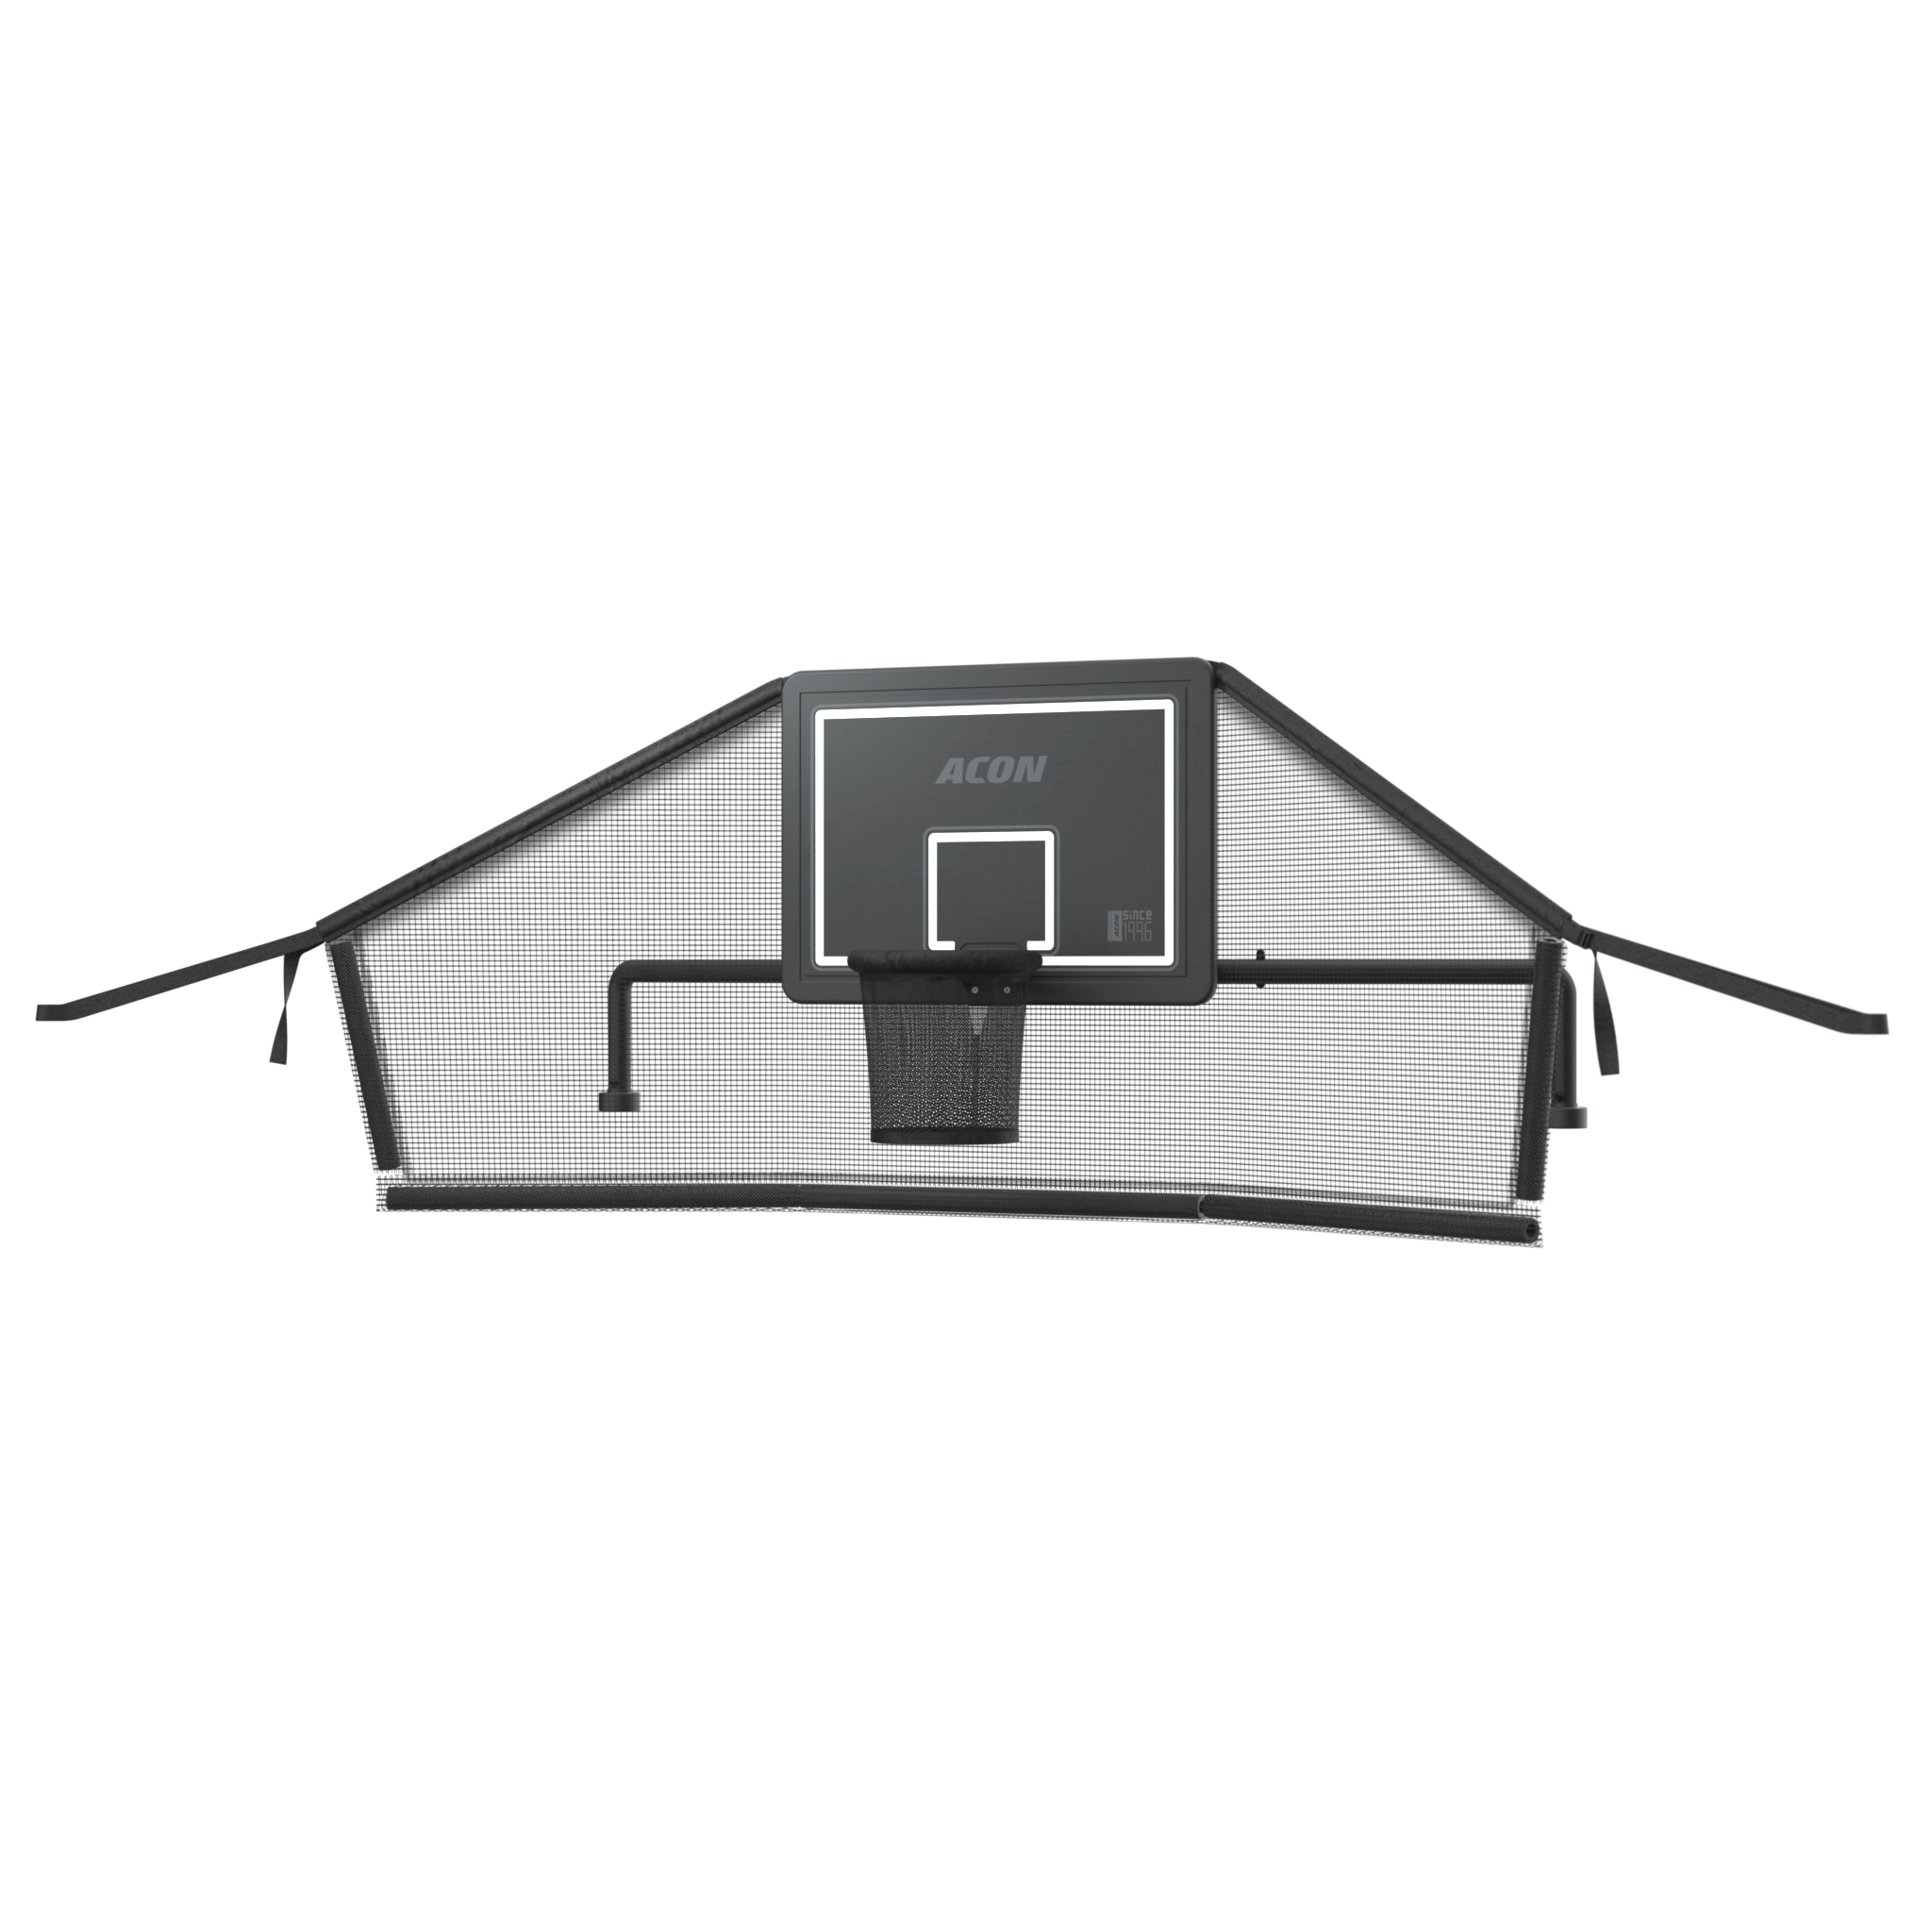 Tuotekuva Acon-trampoliinitelineestä suorakulmaiselle trampoliinille ja sen takaverkosta valkoista taustaa vasten.